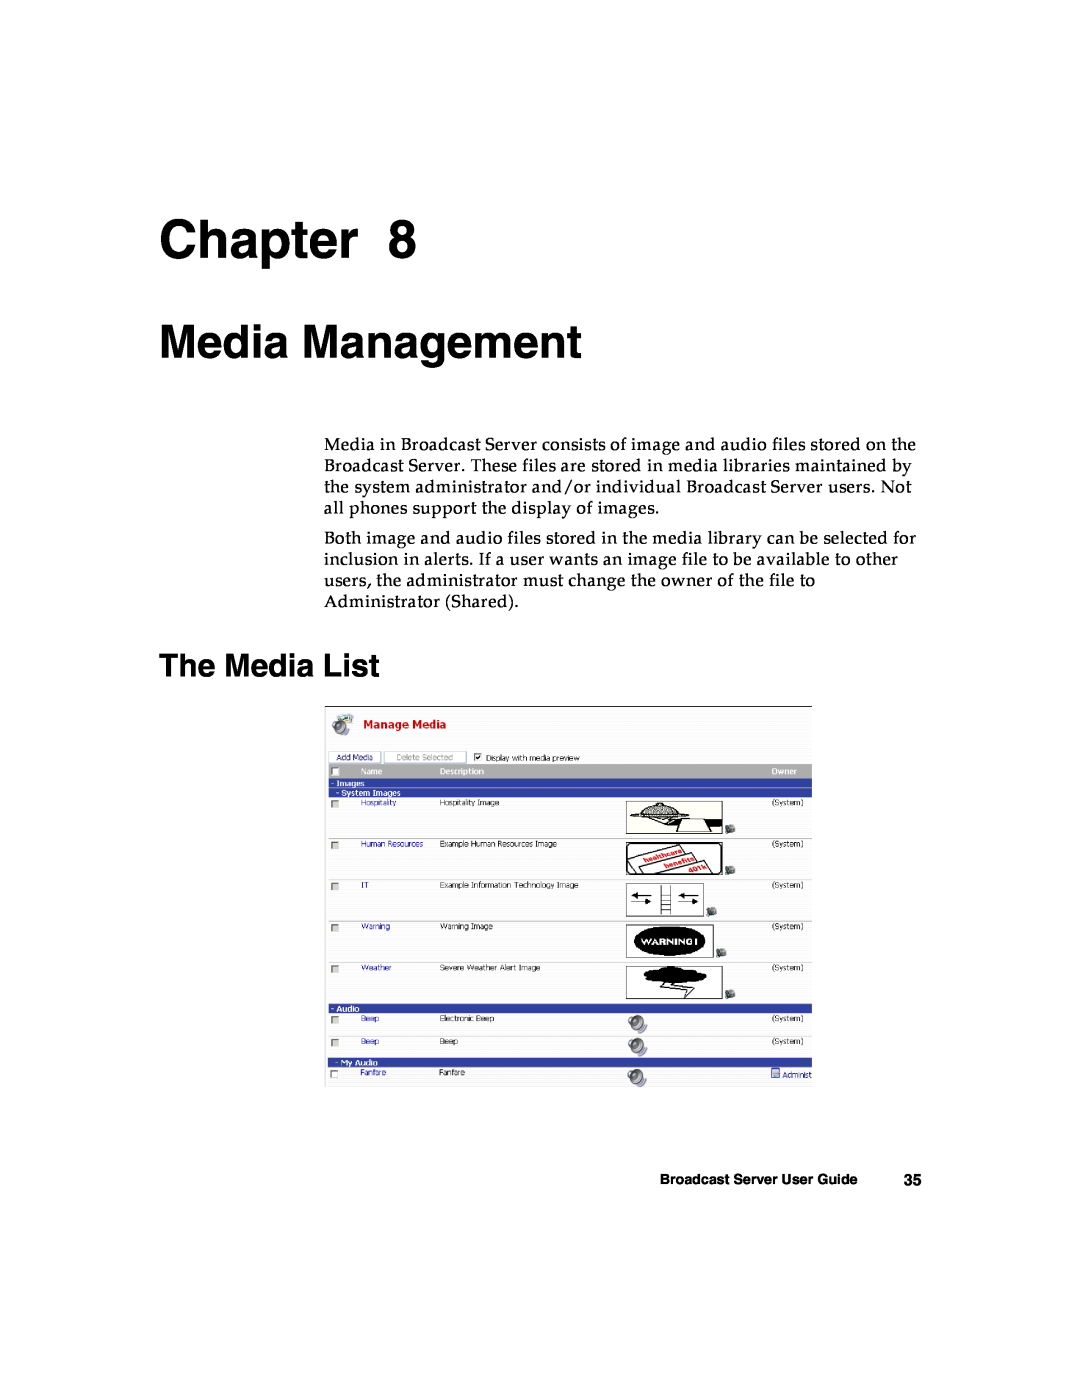 Nortel Networks Broadcast Server warranty Media Management, The Media List, Chapter 